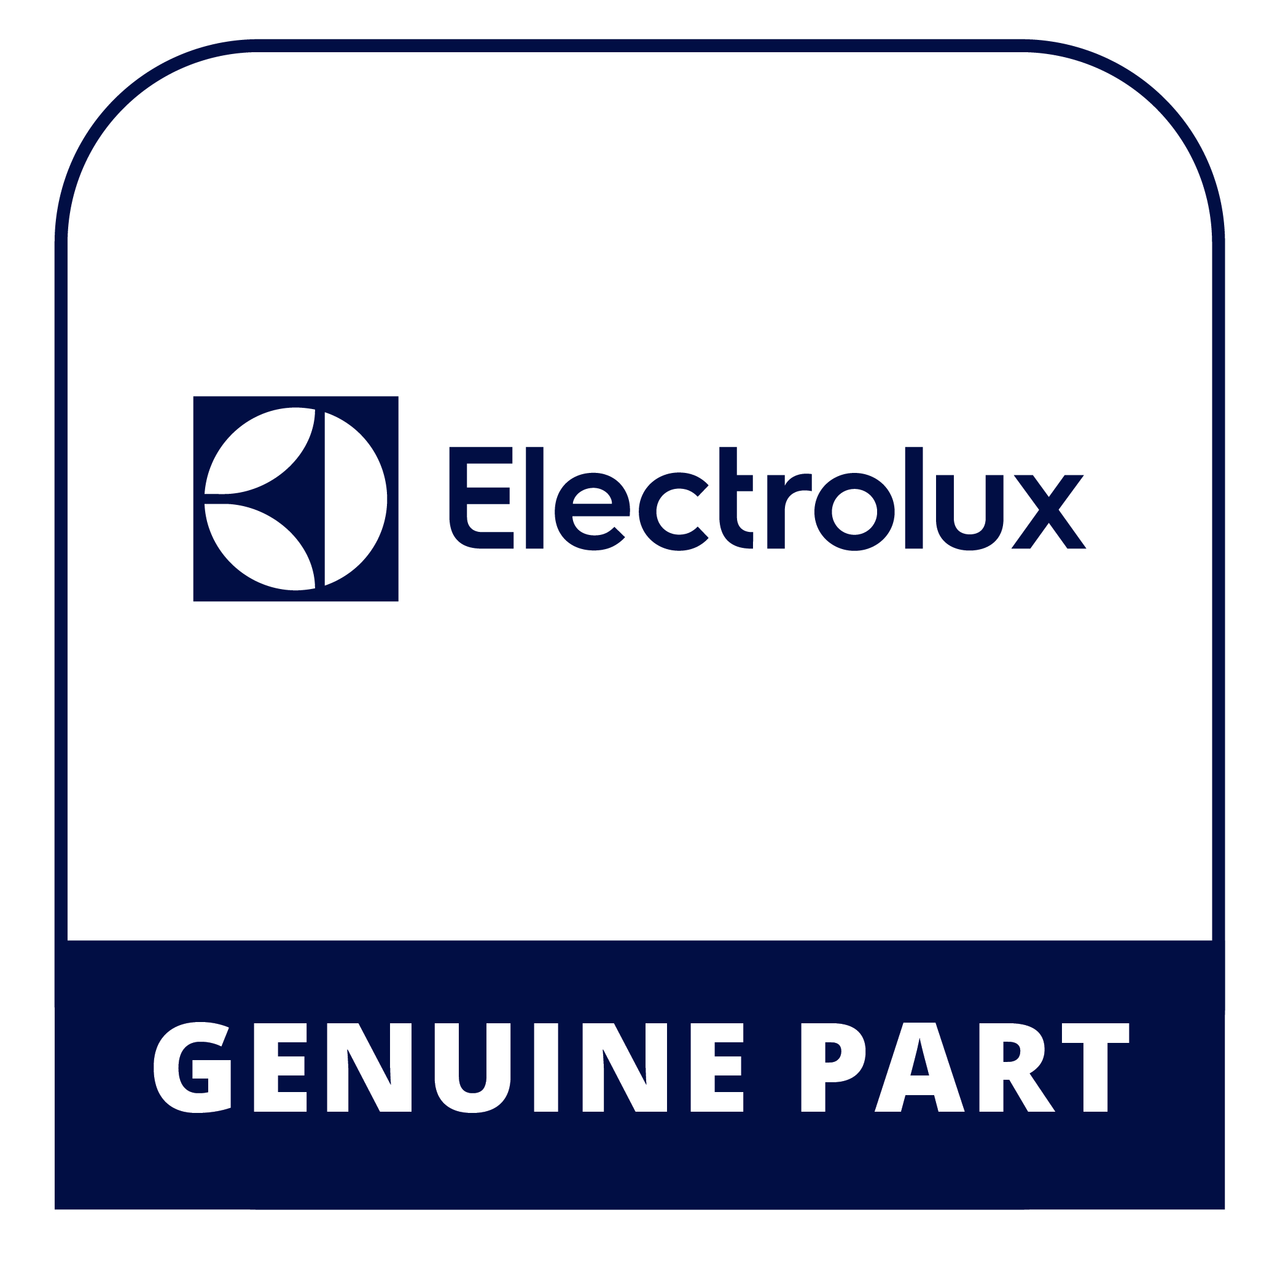 Frigidaire - Electrolux 316438701 - Cap - Genuine Electrolux Part